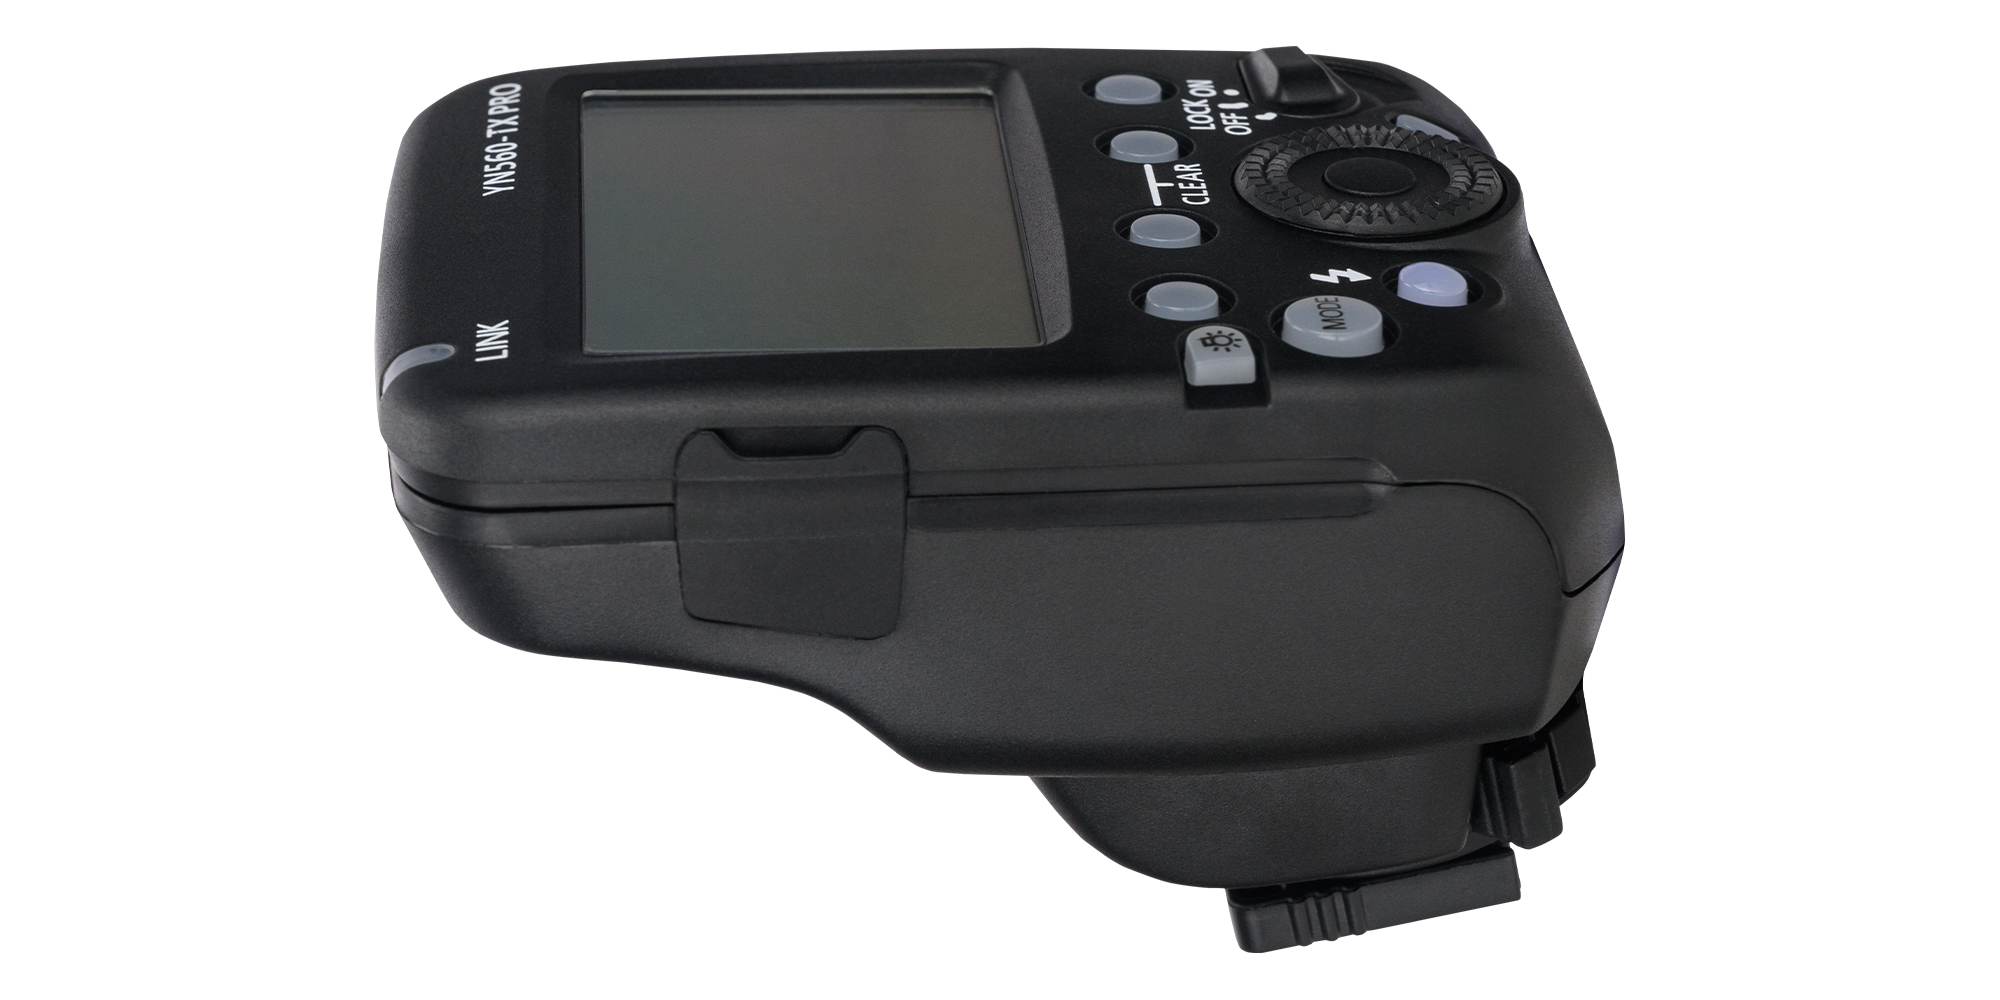 Kontroler radiowy Yongnuo YN560-TX Pro do Sony - Wszechstronność zastosowań